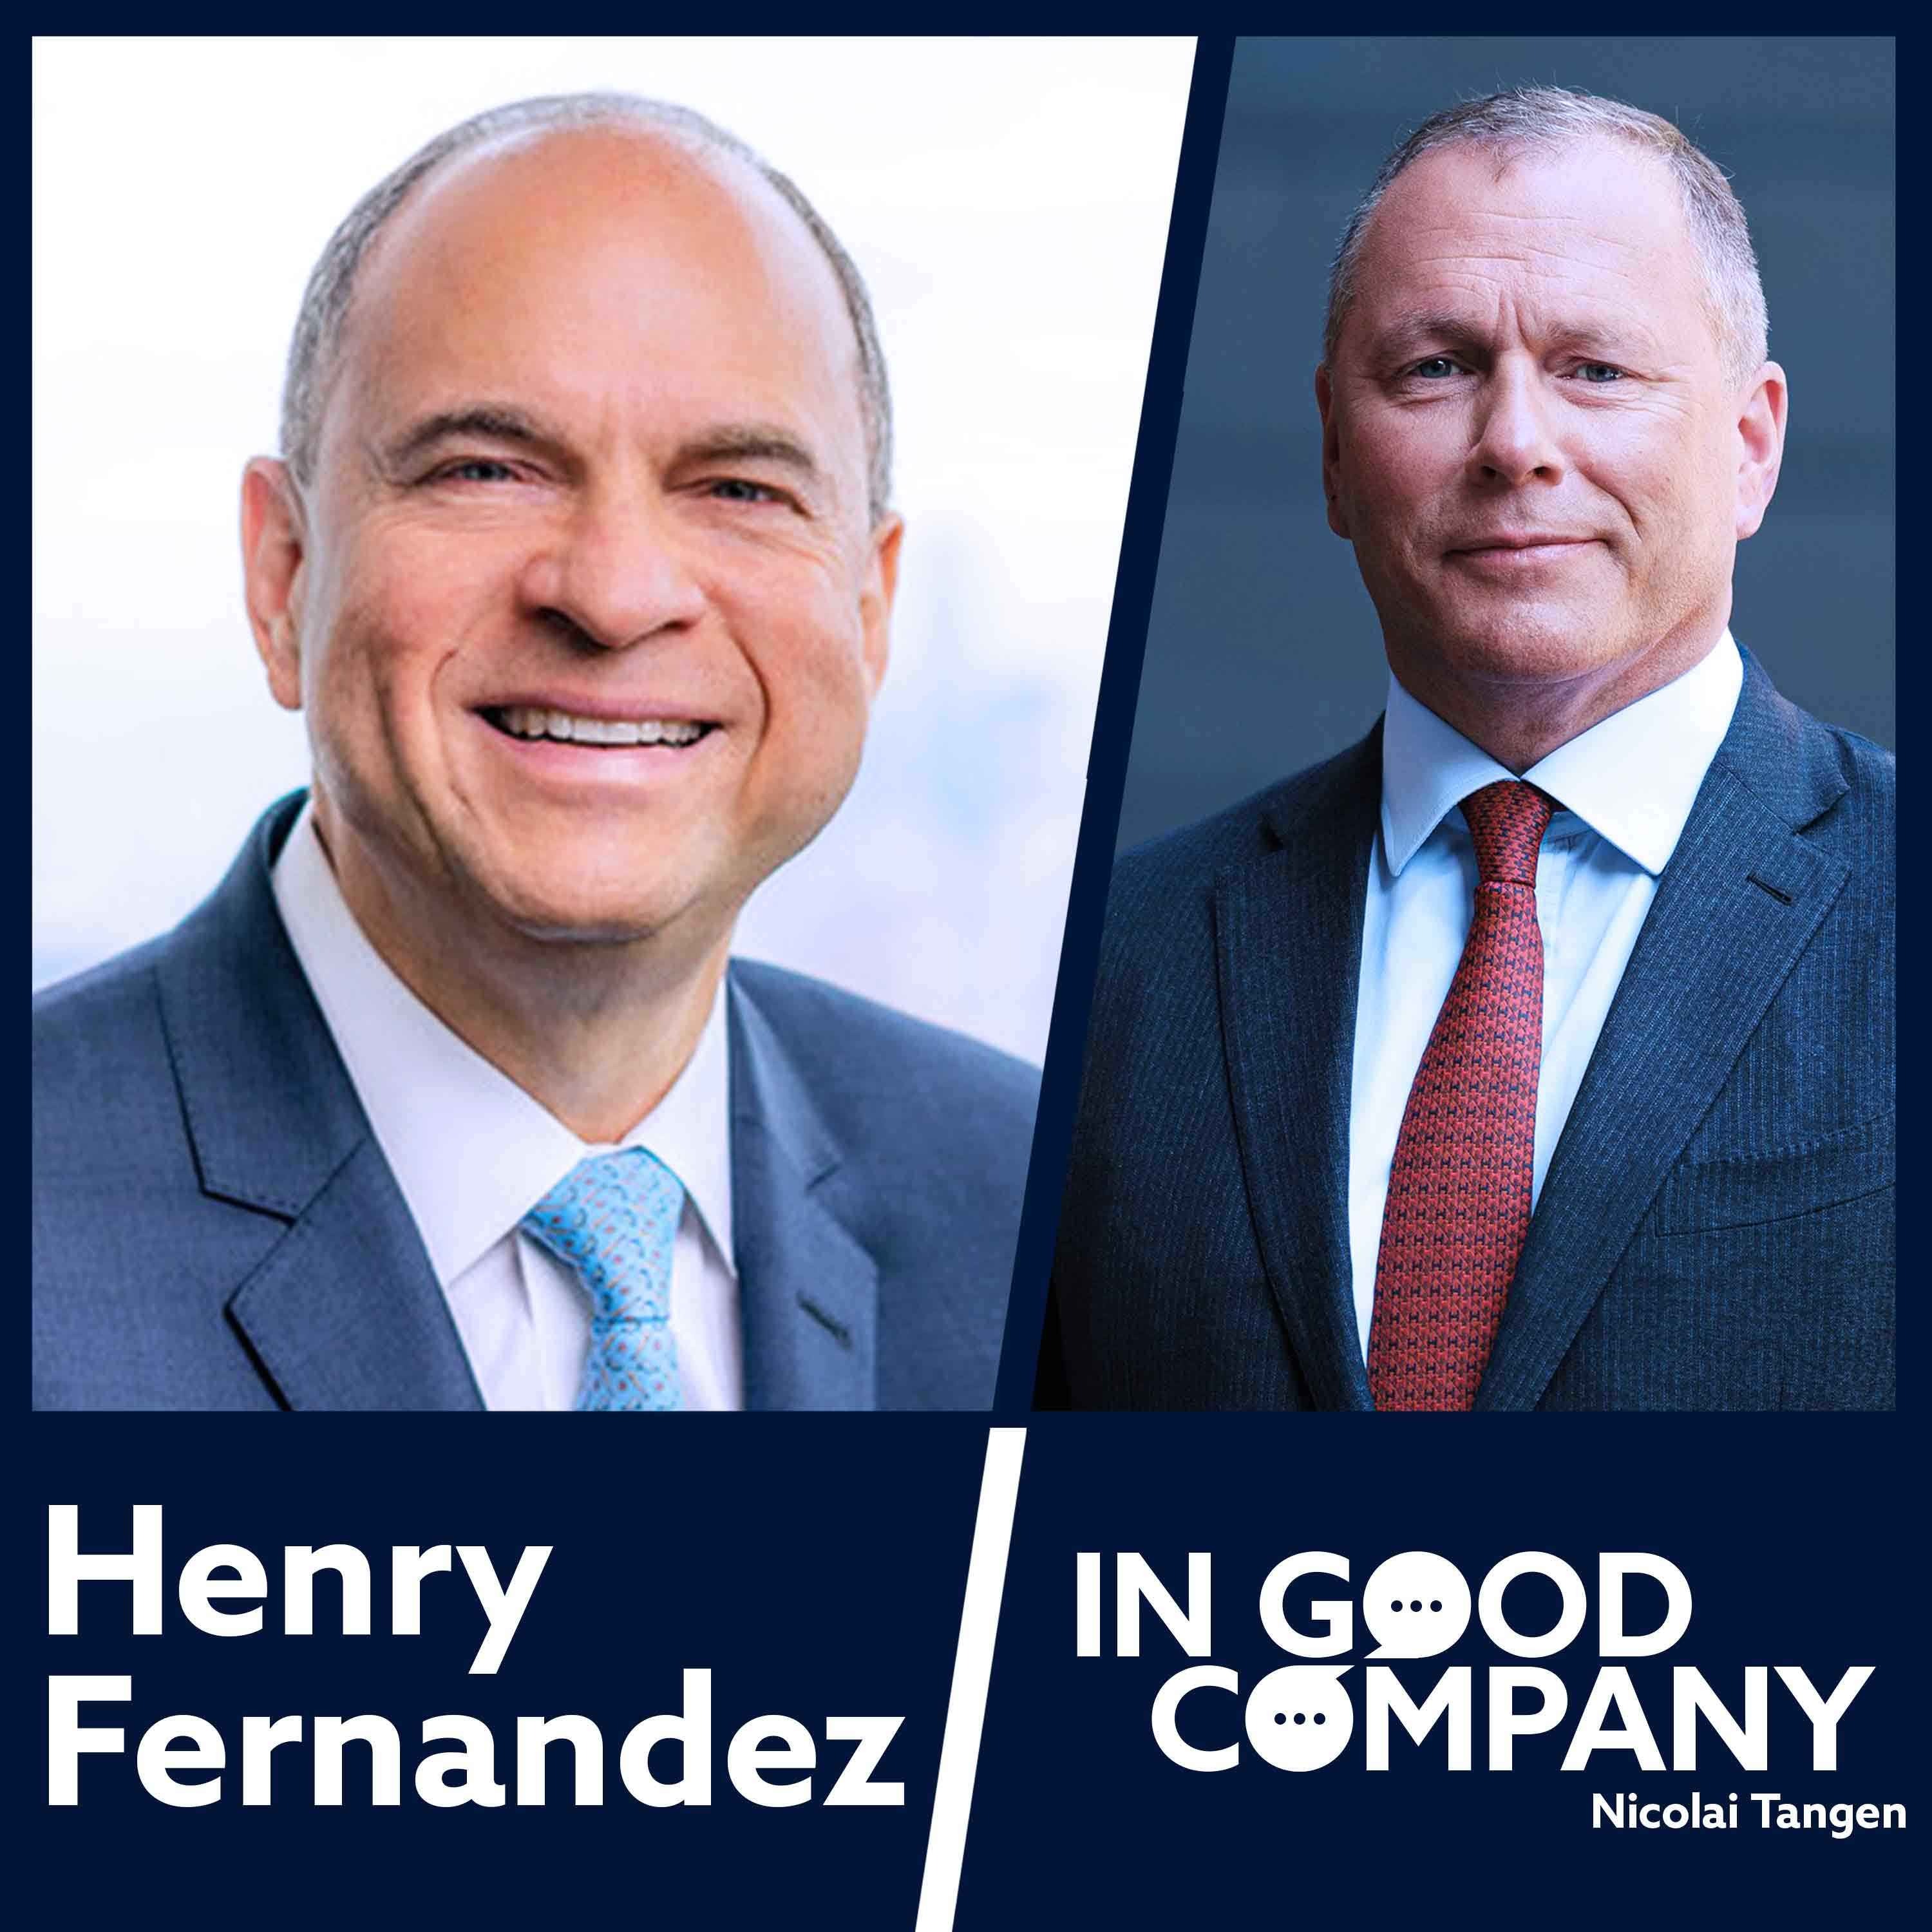 Henry Fernandez CEO of MSCI